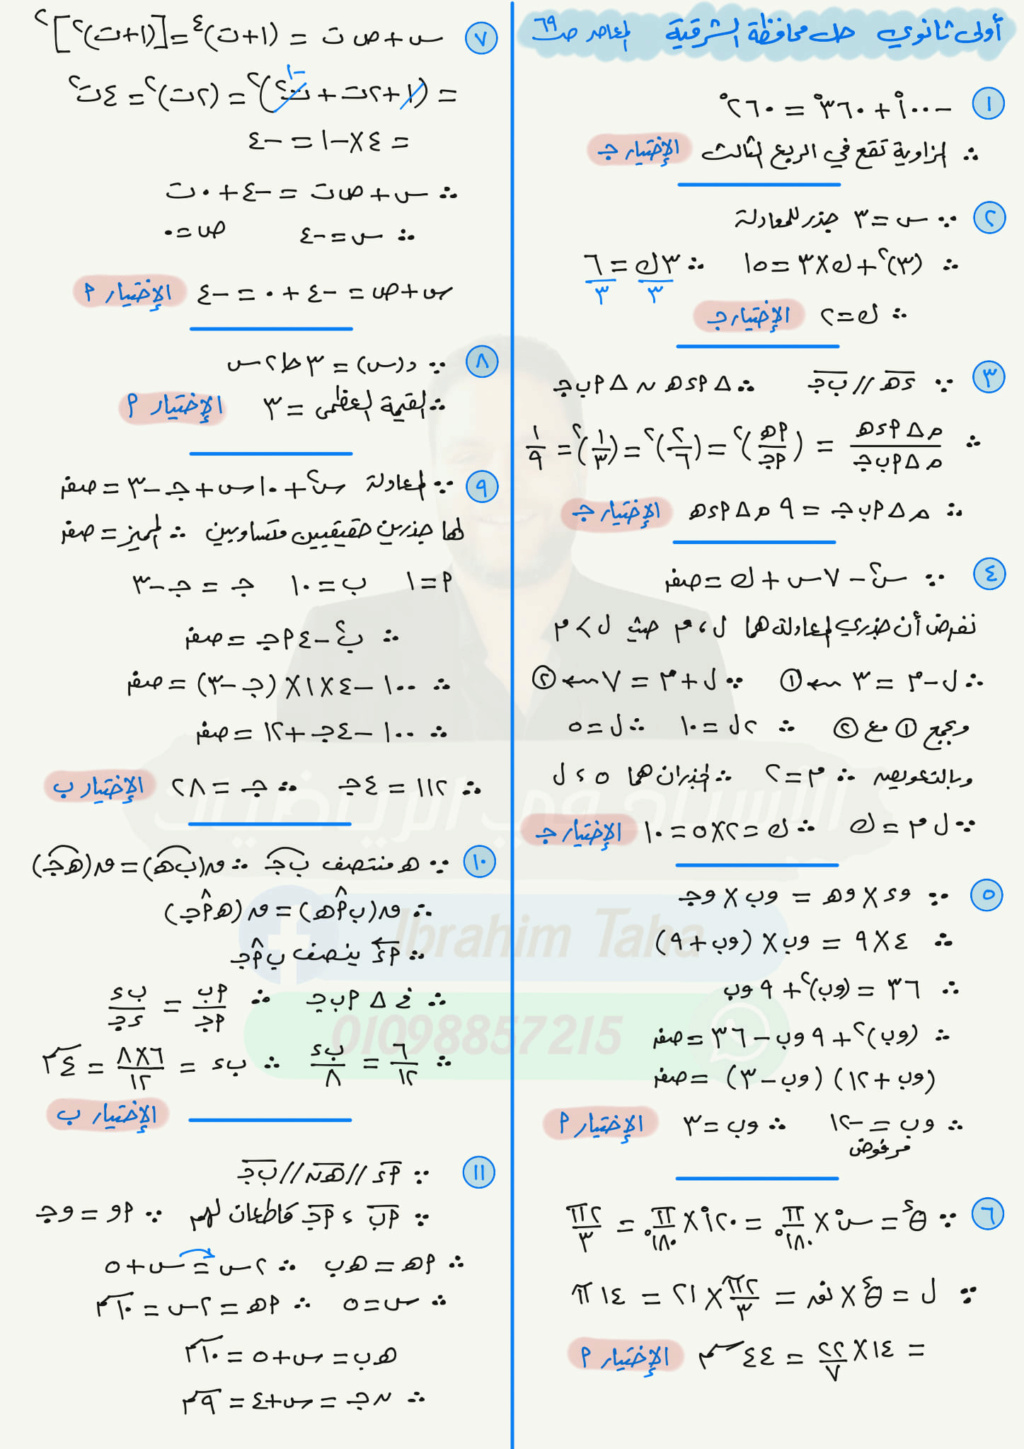 الرياضيات - امتحان الرياضيات للصف الأول الثانوي ترم اول توجيه العاشر من رمضان 11435